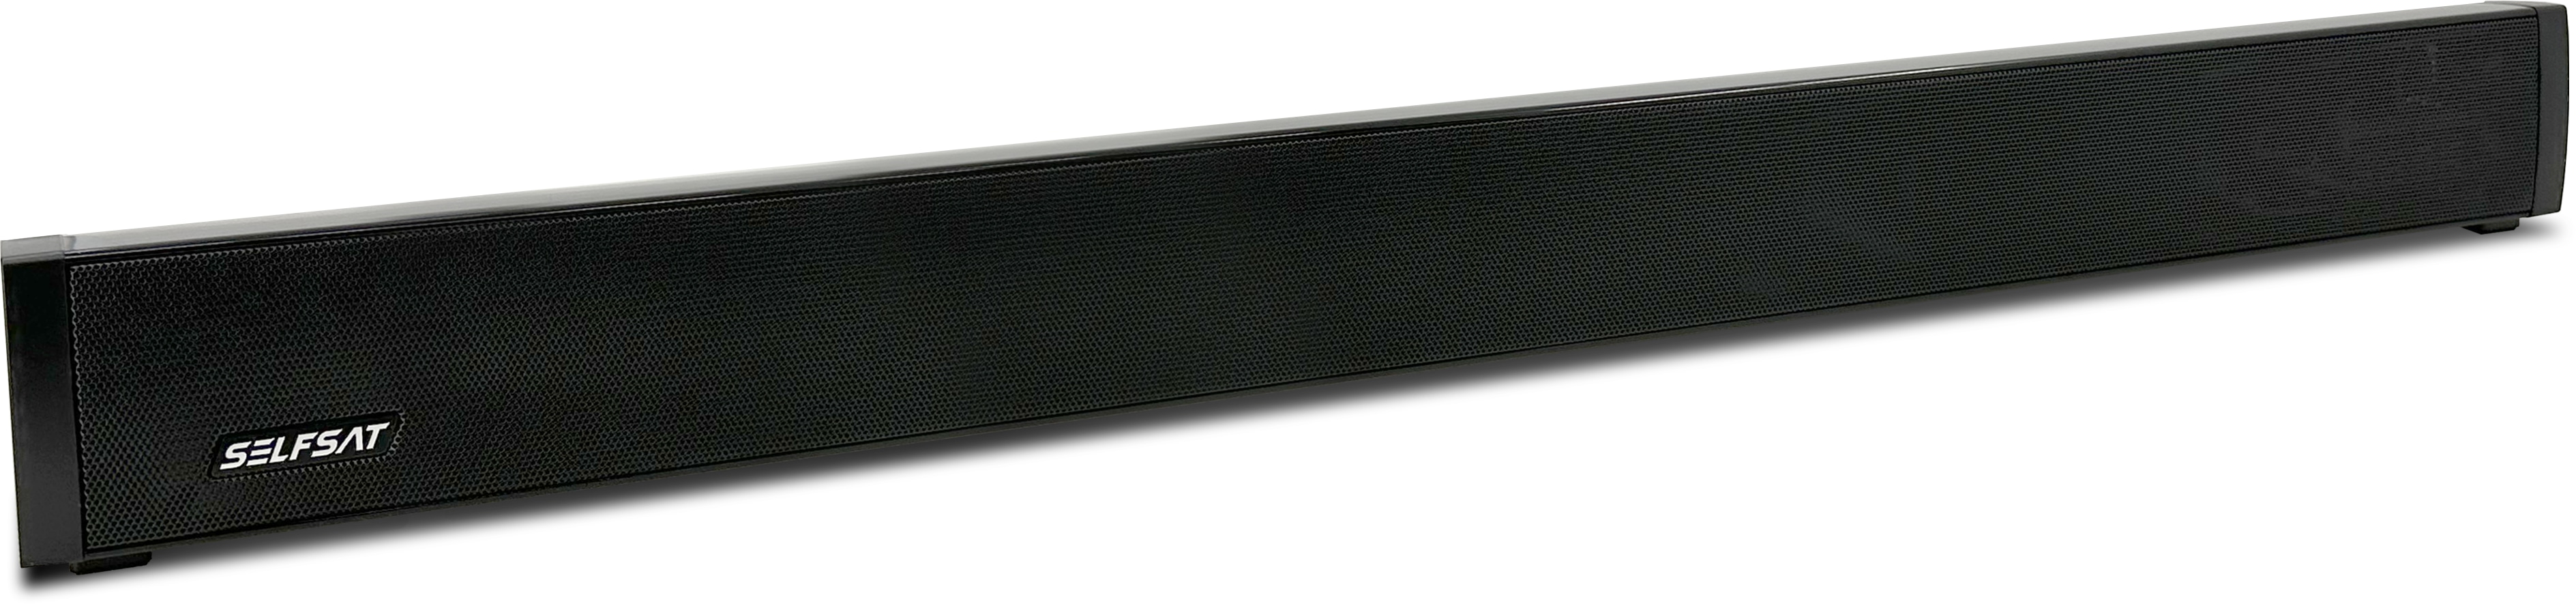 SELFSAT Soundbar 32, 12/230 V, 30 W, schwarz